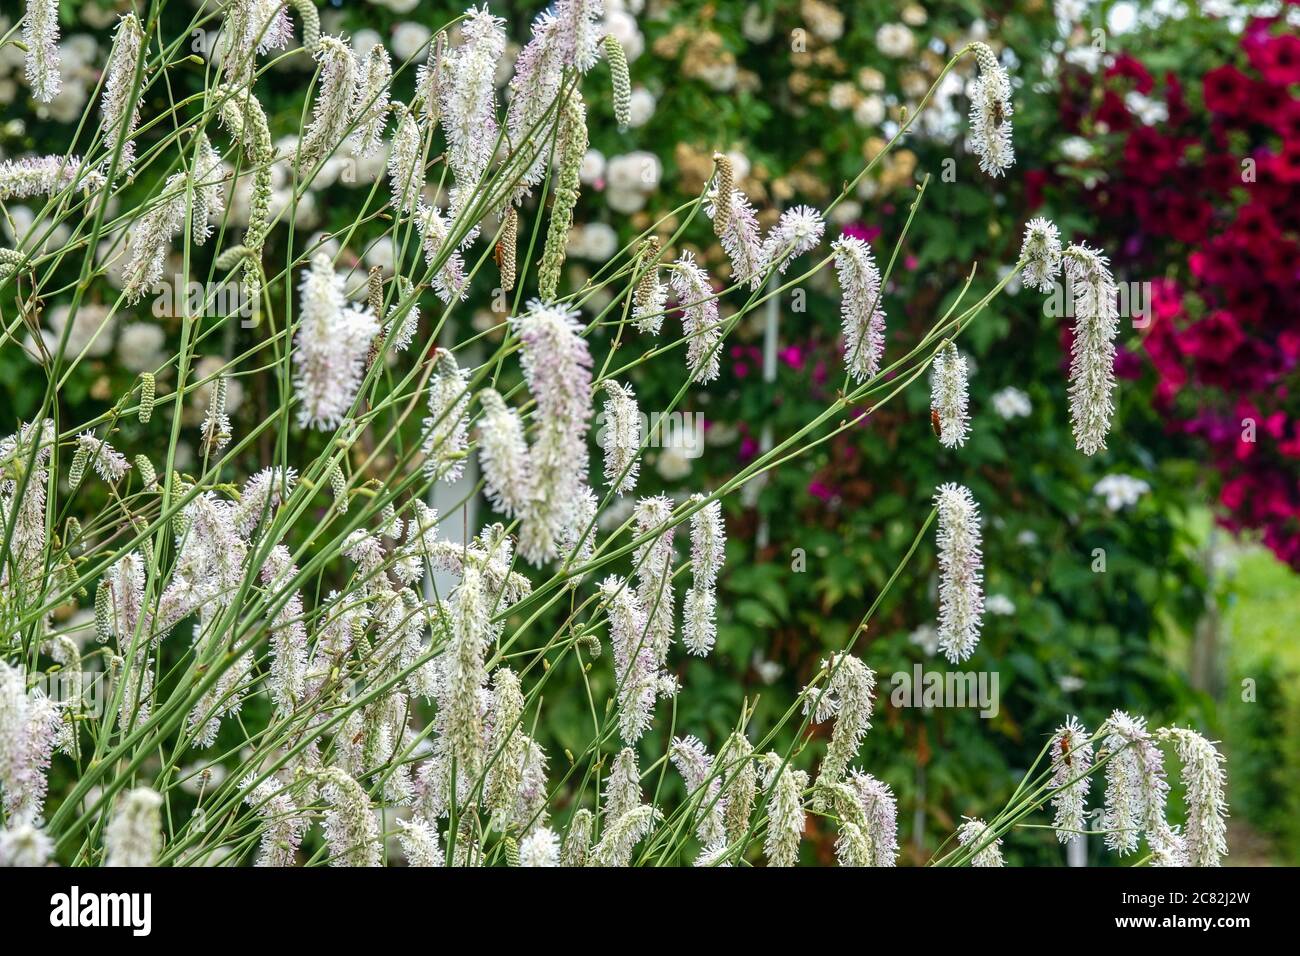 Sanguisorba tenuifolia 'White Tanna' Stock Photo